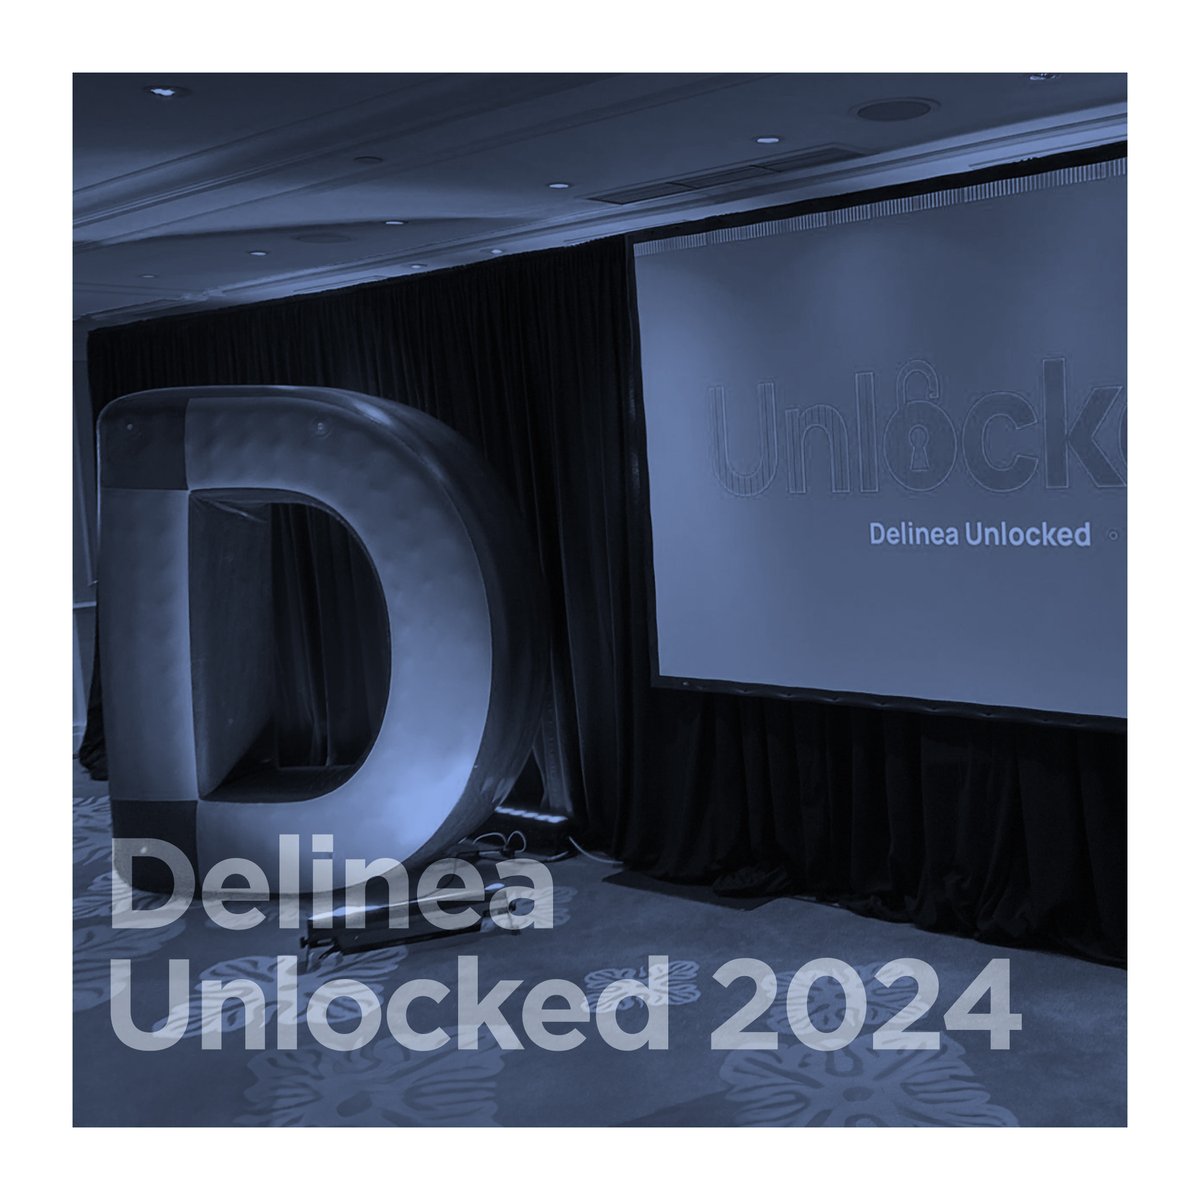 İş ortağımız @DelineaInc 'ın Lisbon'da gerçekleşen #Unlocked etkinliği devam ediyor! Lizbon'da gerçekleşen Unlocked etkinliğinde, modern siber güvenlik tehditleriyle mücadele edebilecek yeni çözümleri ve Delinea platformundaki son gelişmeleri yakından takip ediyoruz.🙌🏻